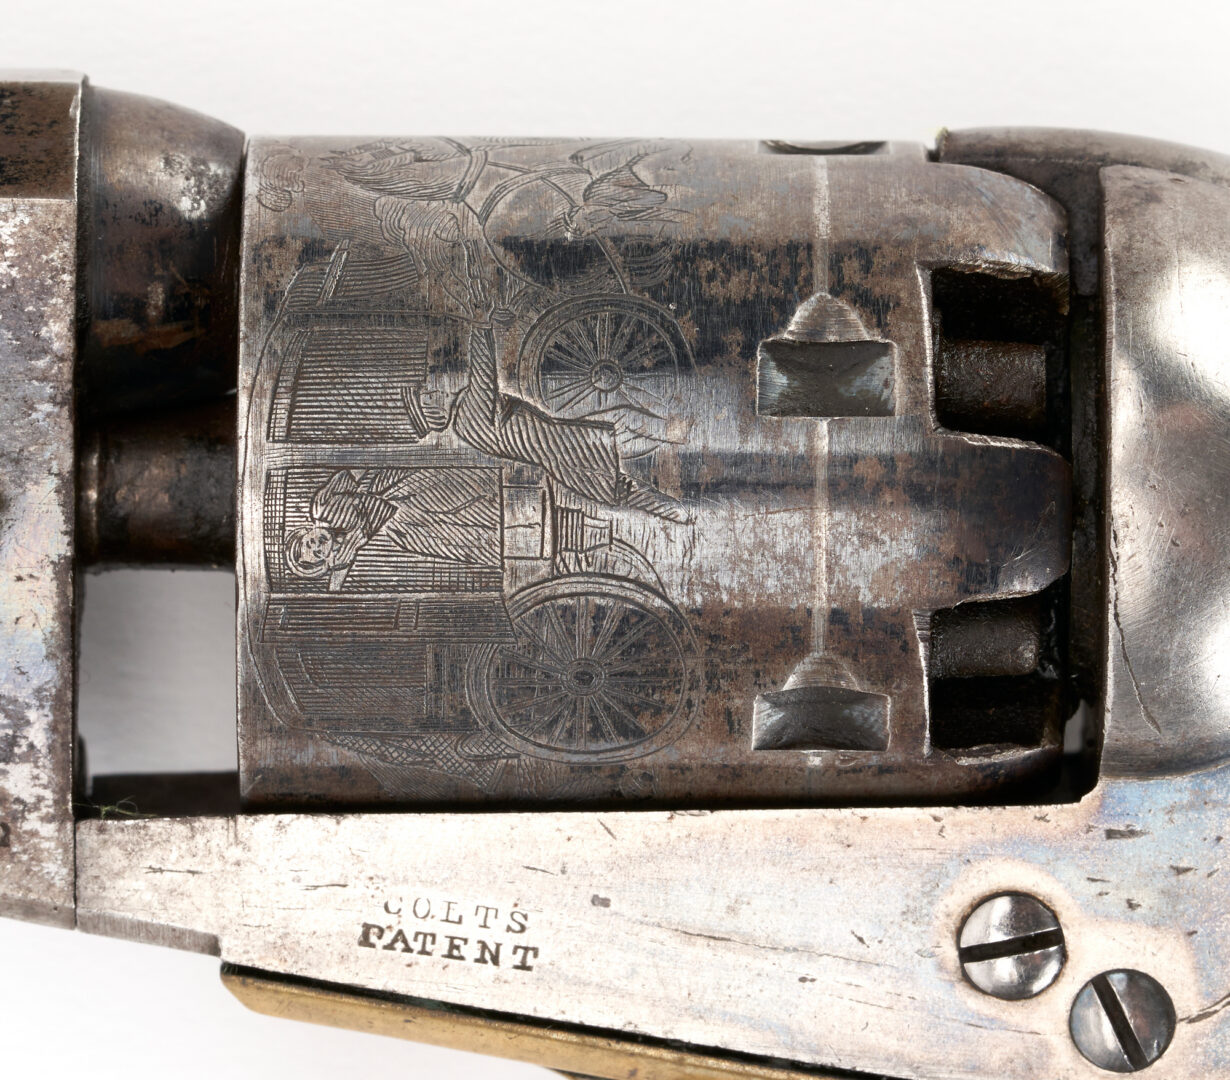 Lot 673: Colt Model 1849 Pocket Percussion Revolver w/ Case, .31 cal., 2 items